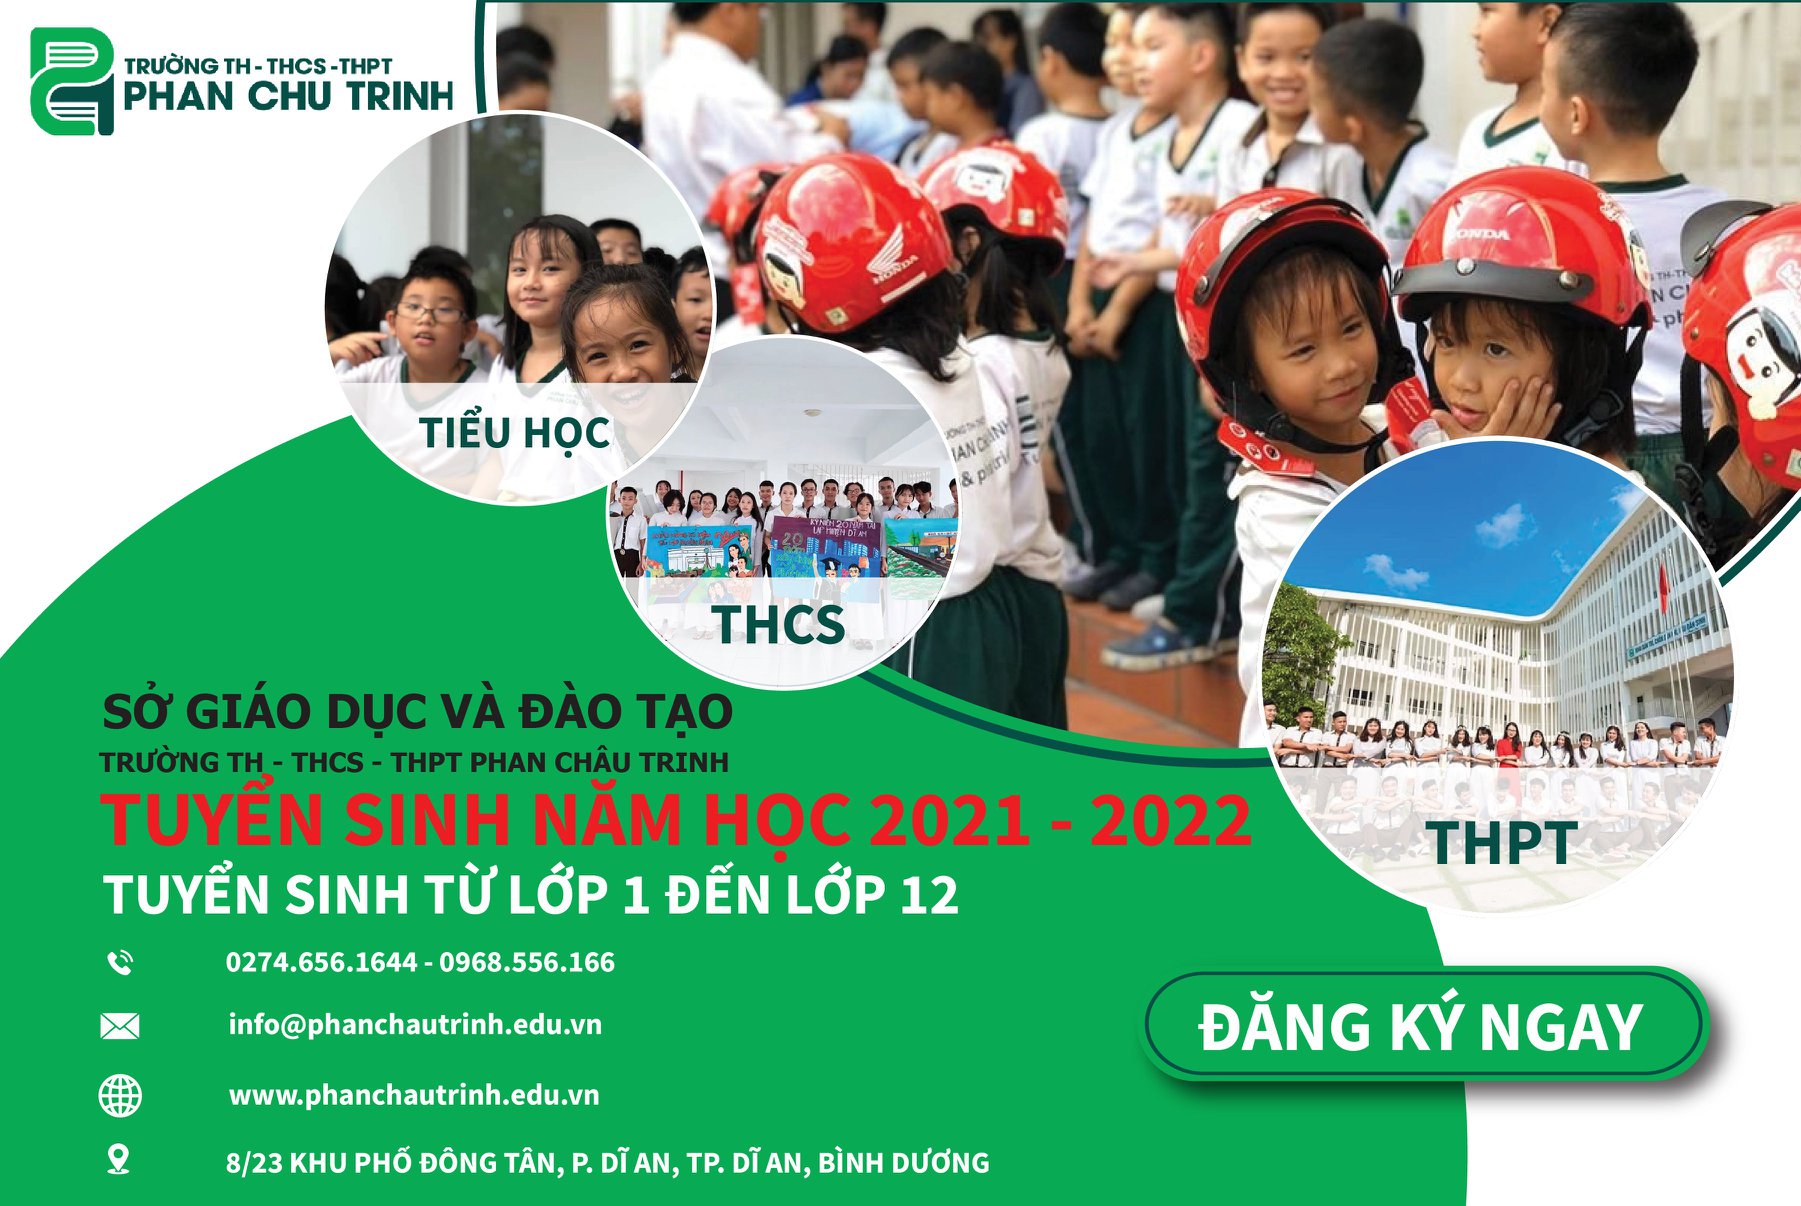 Trường TH - THCS - THPT Phan Chu Trinh ảnh 2